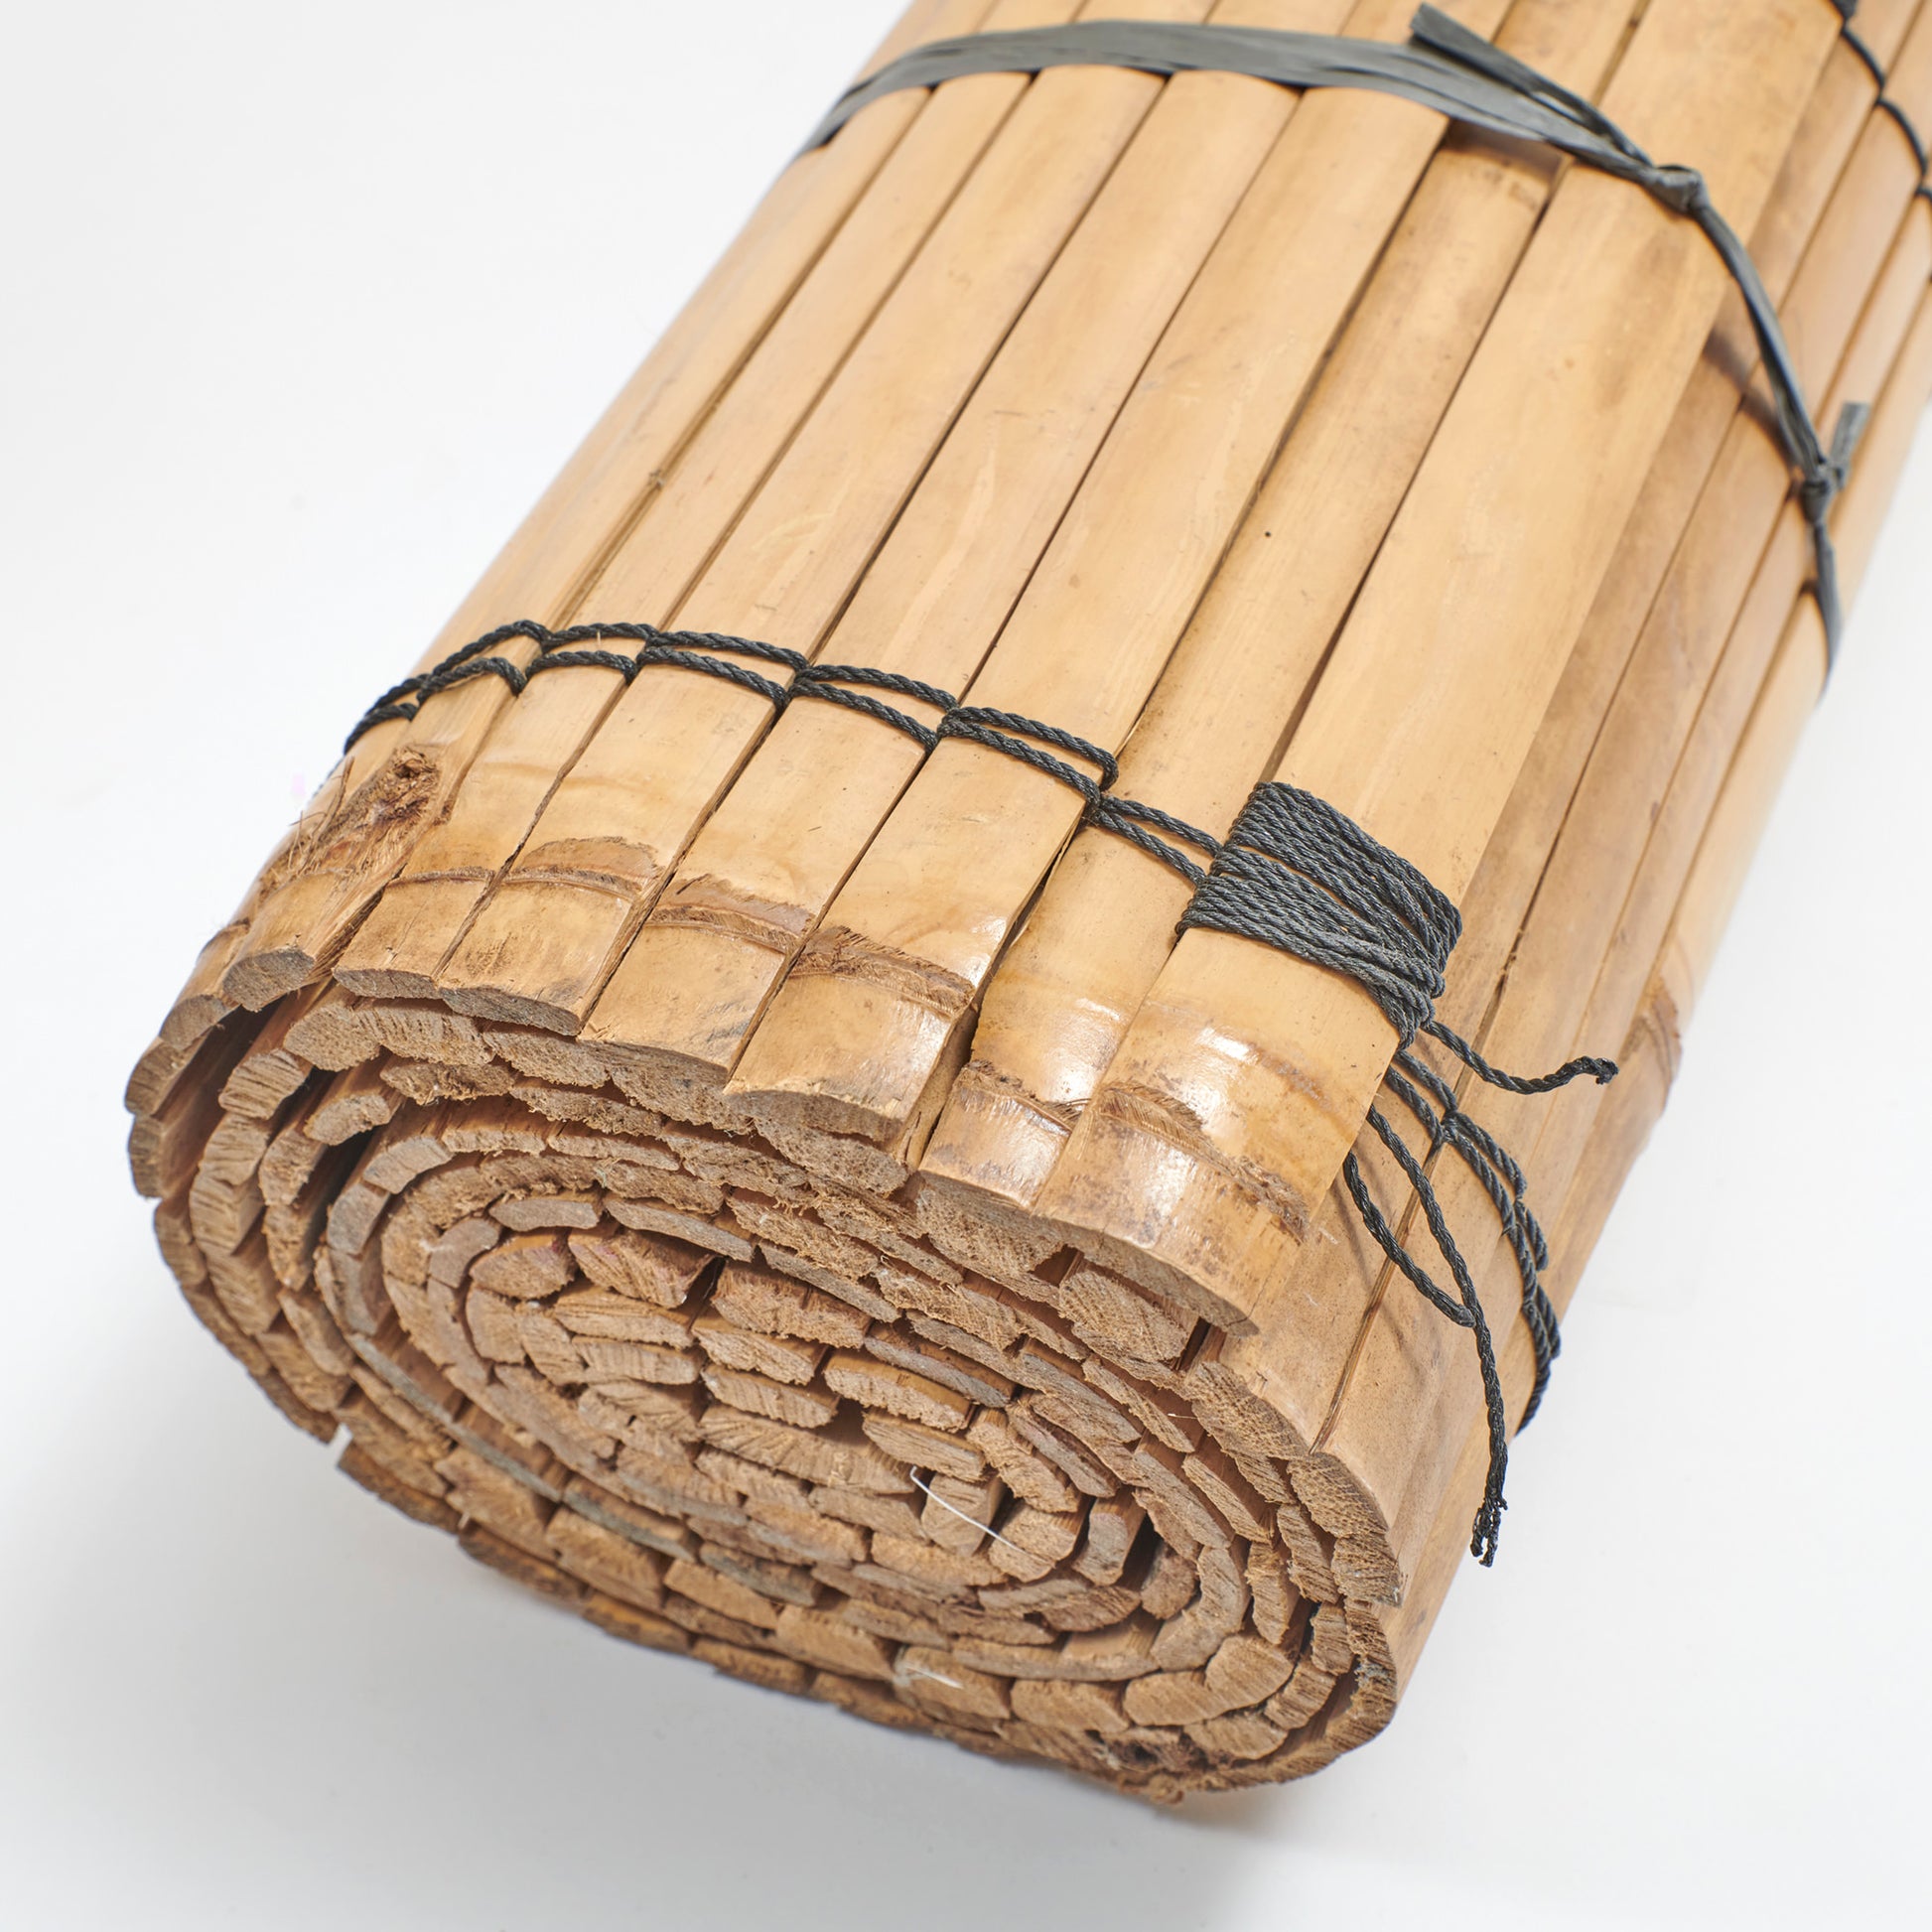 Detailfoto der zu einem Sichtschutz aneinander geknüpfte Bambusleisten